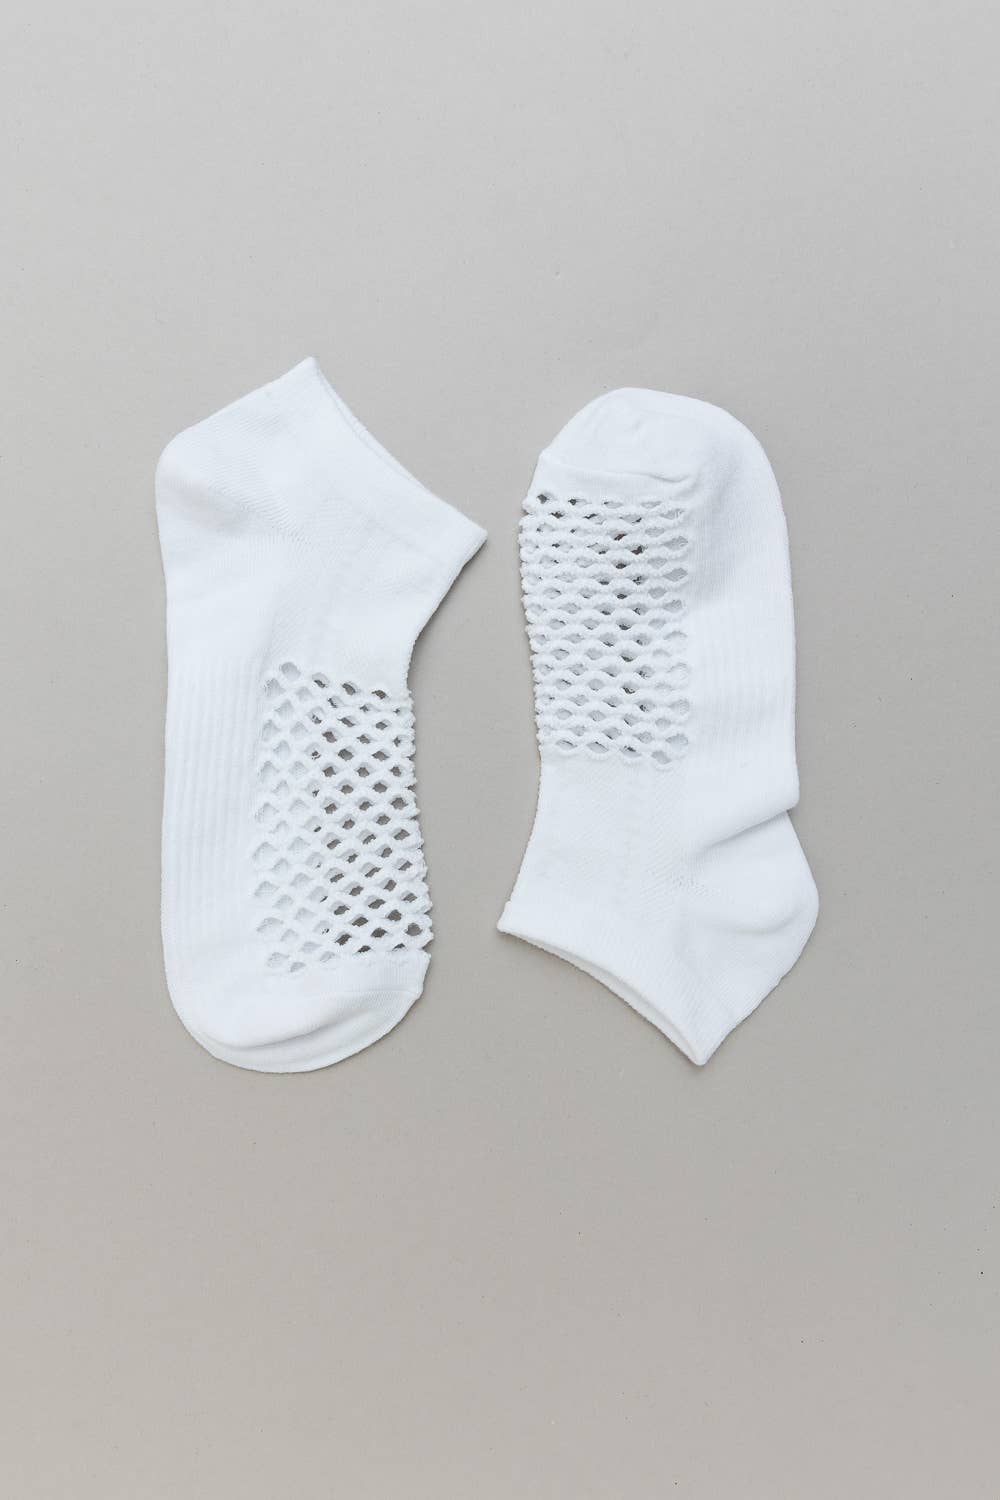 Off White Fishnet Hollow Seamless Socks